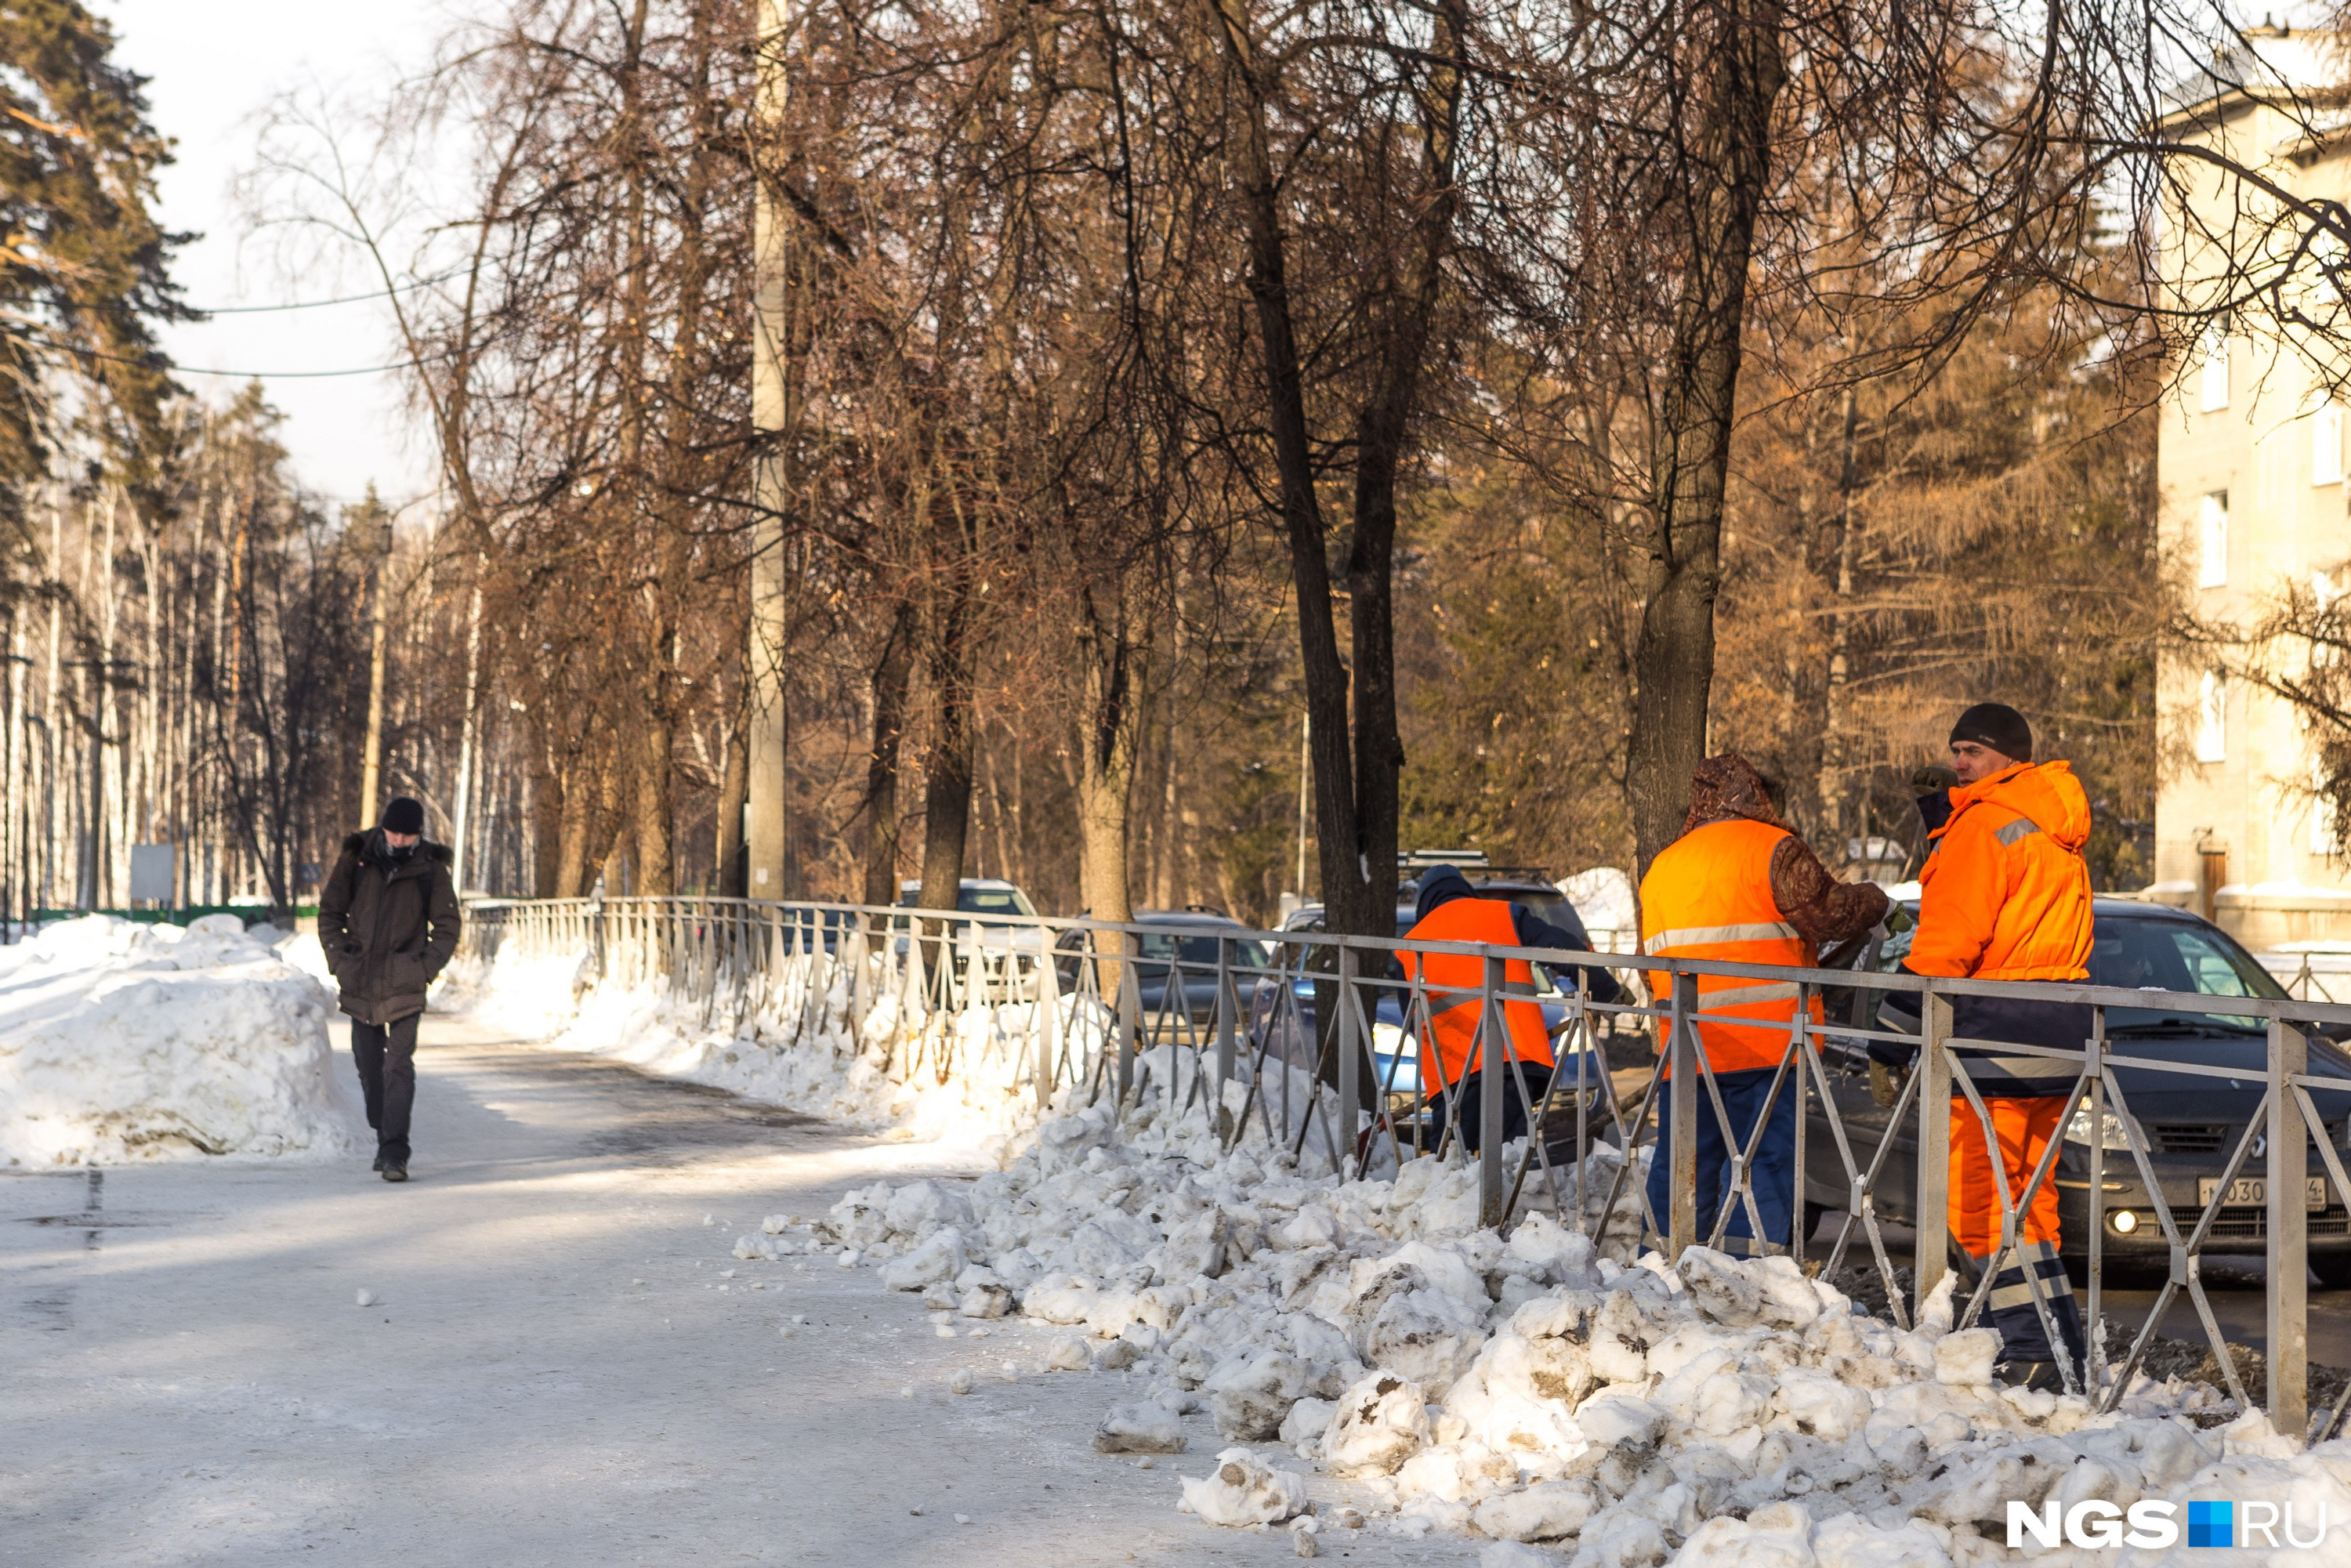 Рабочие в оранжевых жилетах приводят в порядок обочины дорог